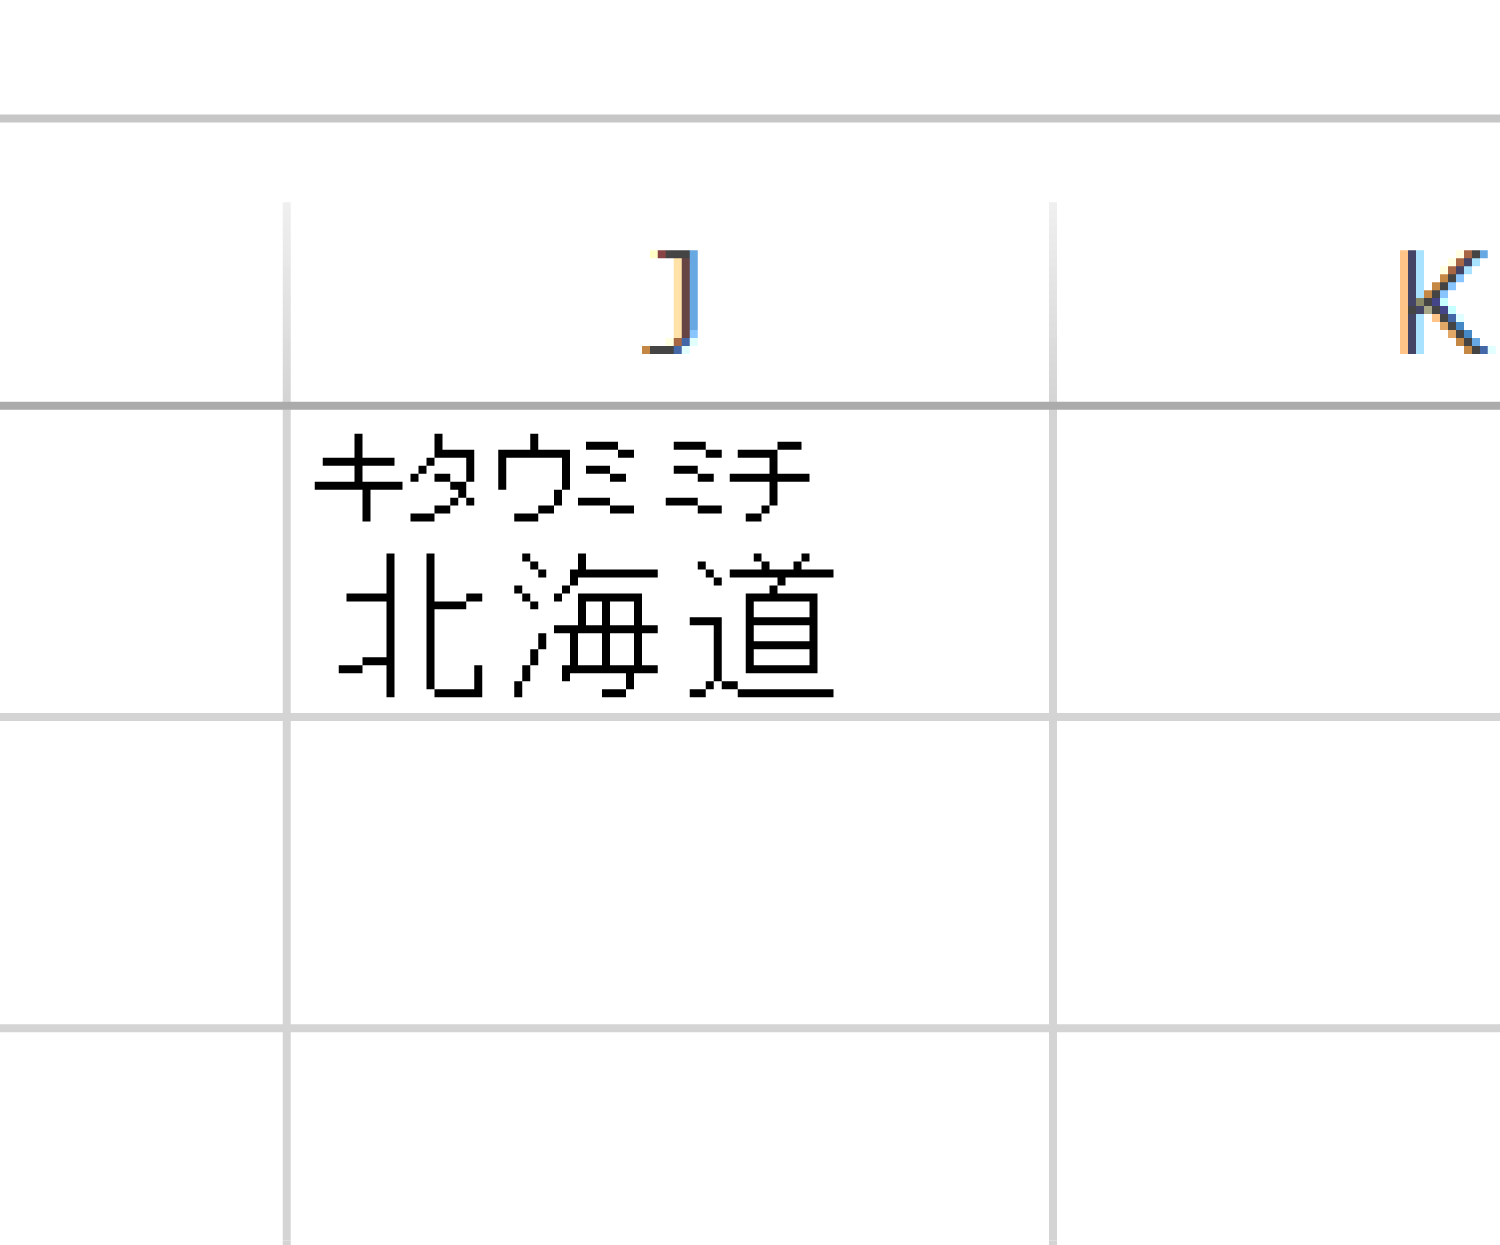 Excelで漢字にフリガナを表示する3